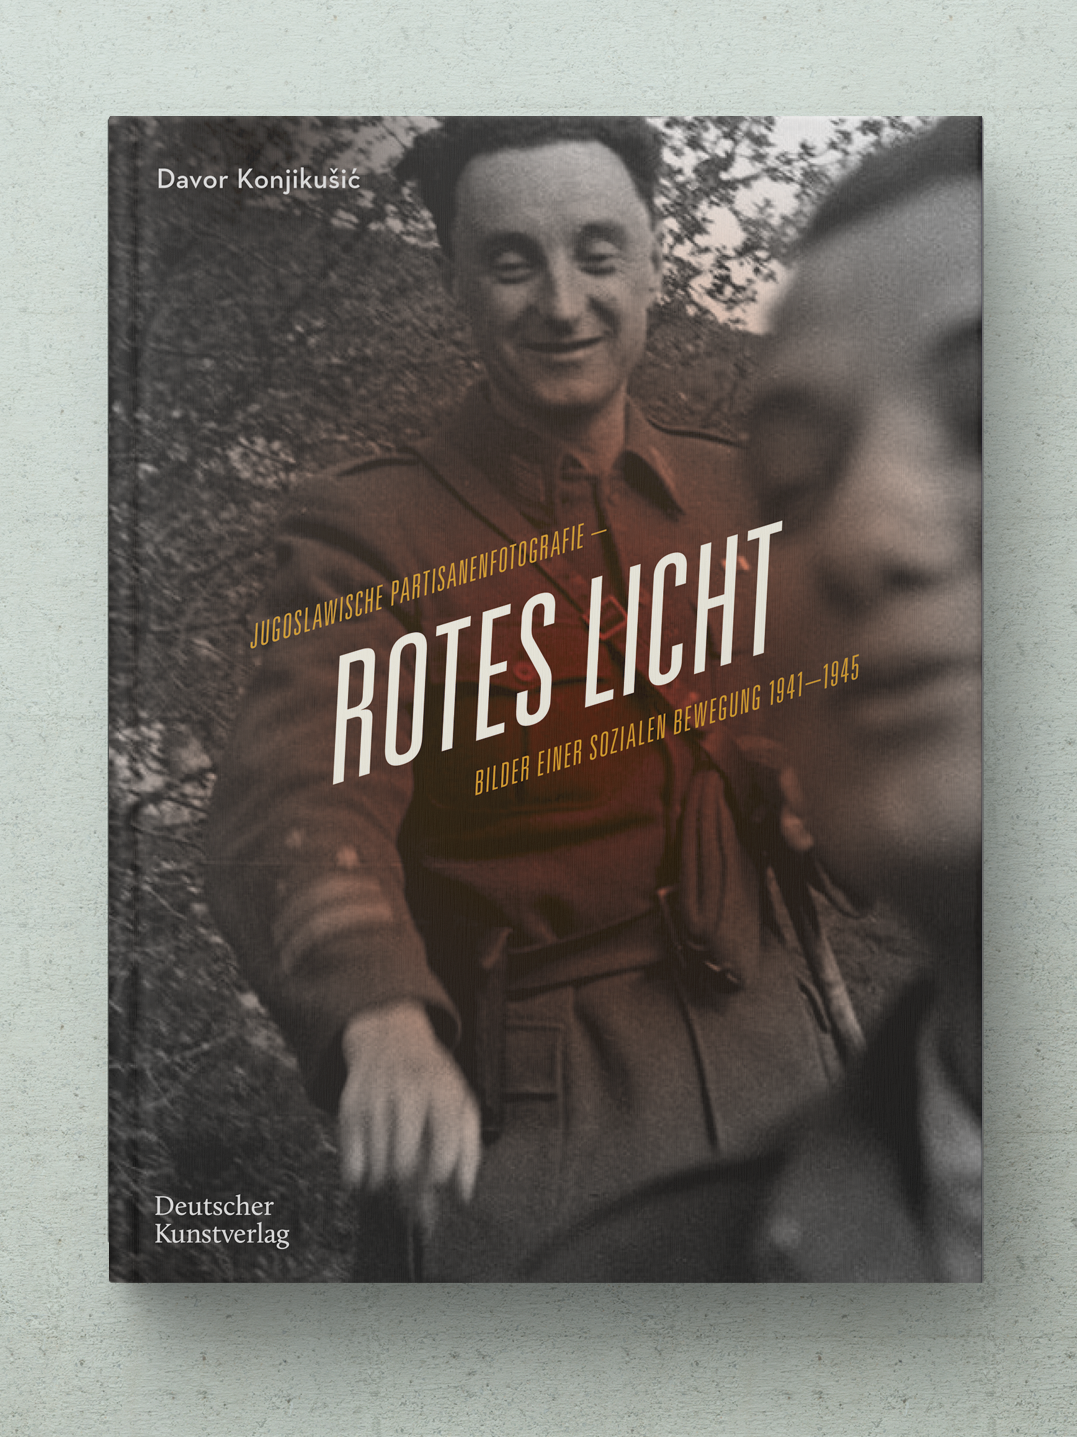 Buch: Jugoslawische Partisanfotografie – Rotes Licht. Bilder einer sozialen Bewegung 1941-1945